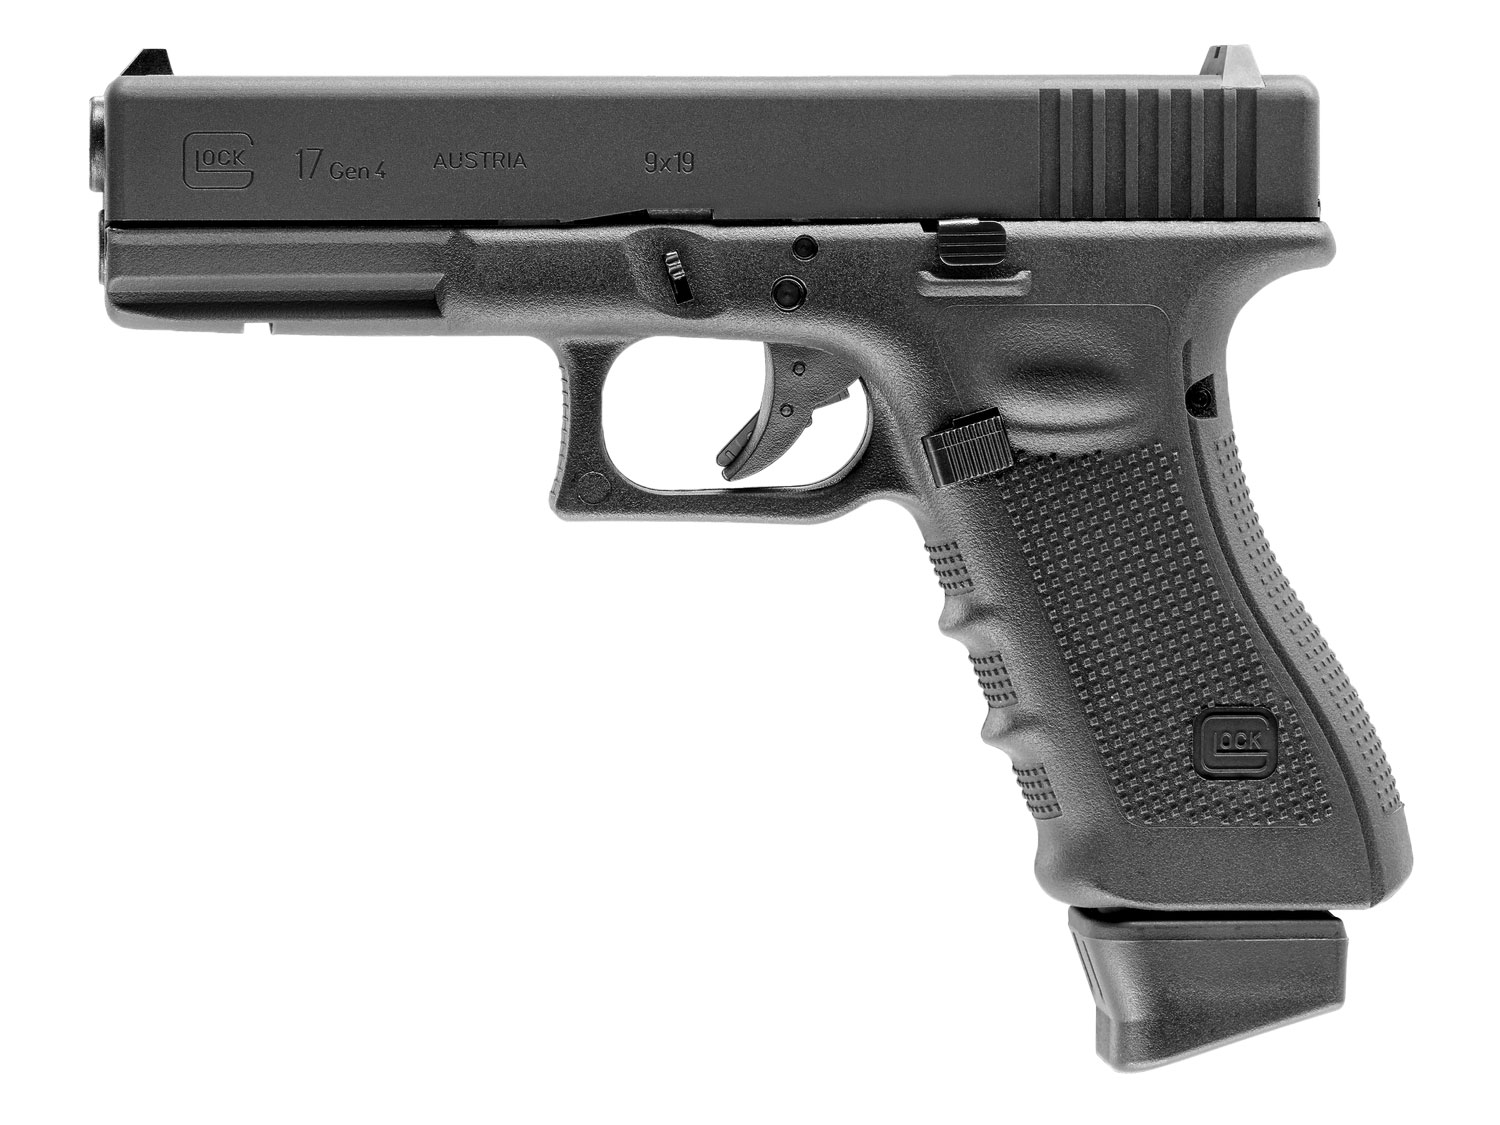 Zdjęcia - Broń zabawkowa Glock Pistolet ASG  17 gen 4 6 mm CO2  (2.6415)